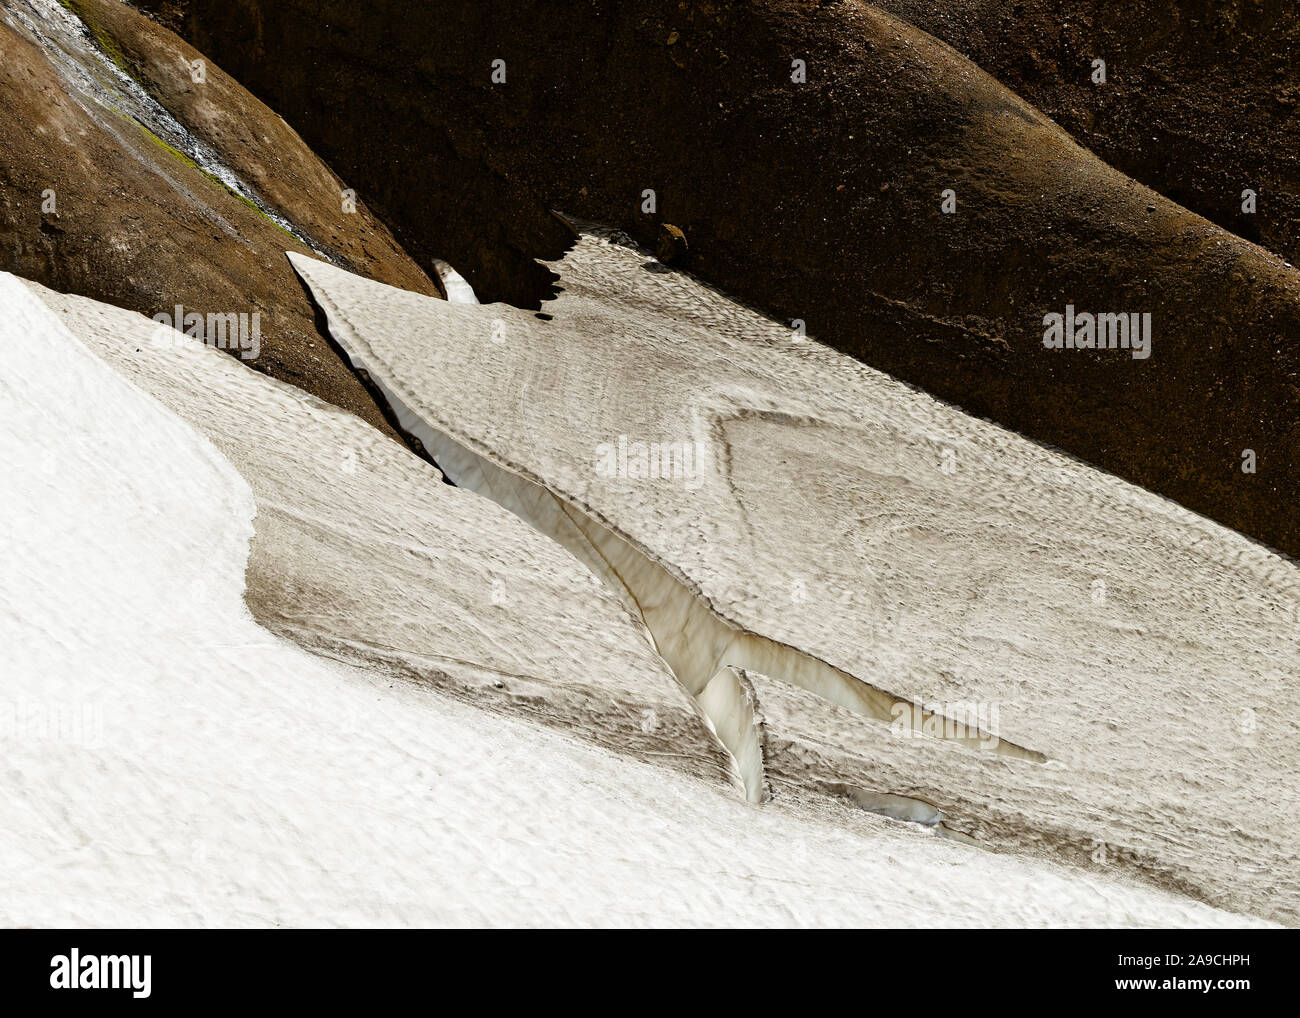 Teil eines schmelzenden Schneefeld mit Risse und Furchen in einer Landschaft in Ocker- und Brauntönen - Ort: Island, Highlands, Bergland' Kerlingarfjöll' Stockfoto